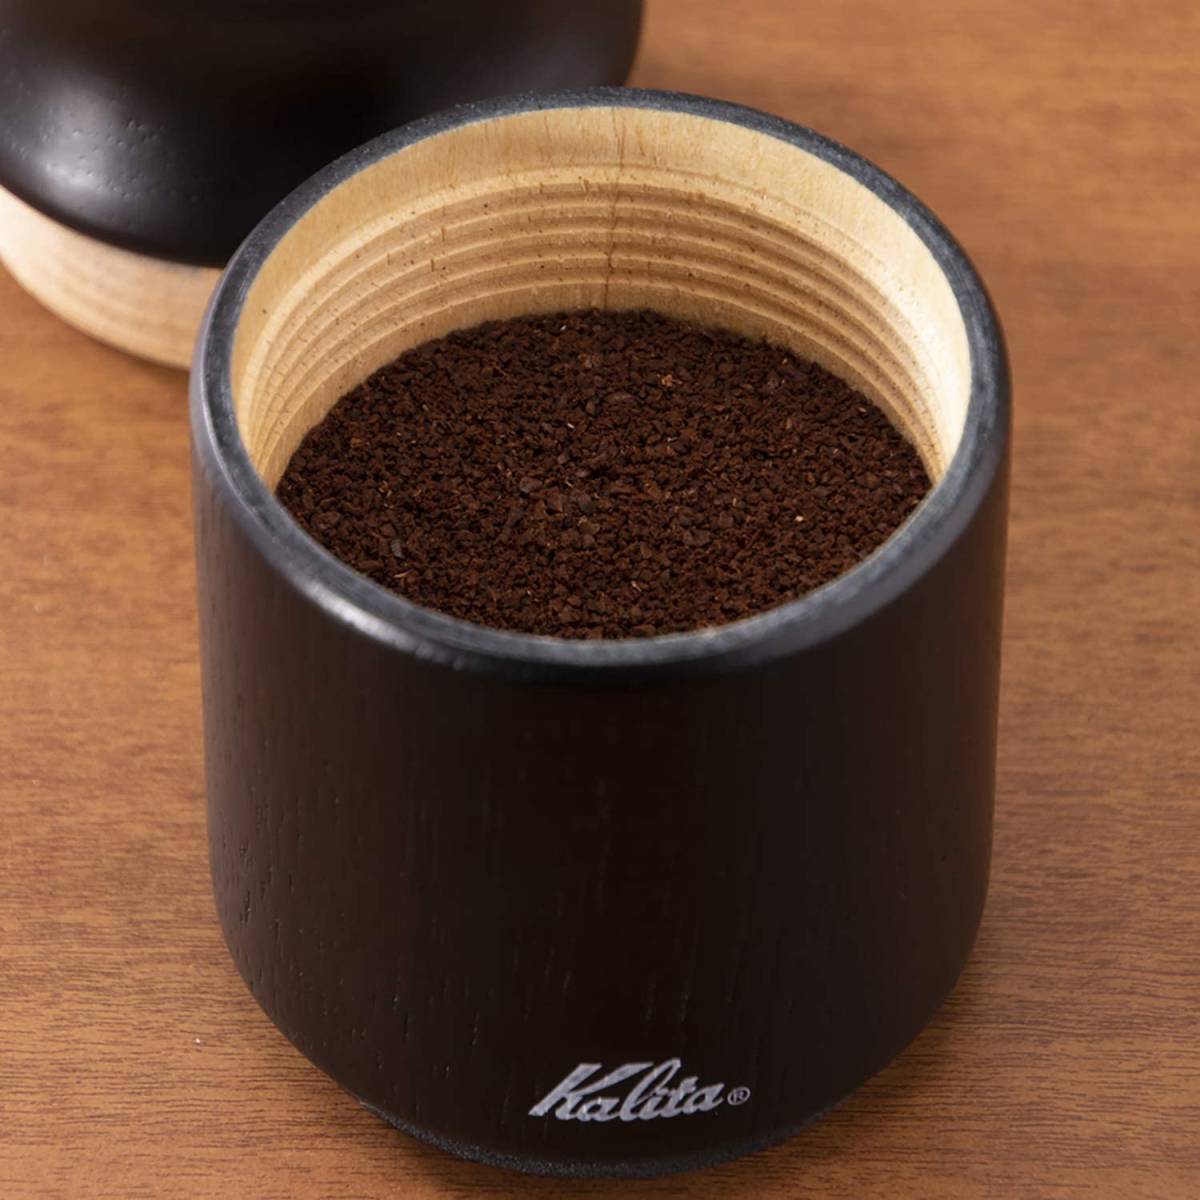 カリタ コーヒーミル 手挽き ブラック コーヒー グラインダー 木製 シンプル おしゃれ インテリア クラシック プレゼント ギフト 手動